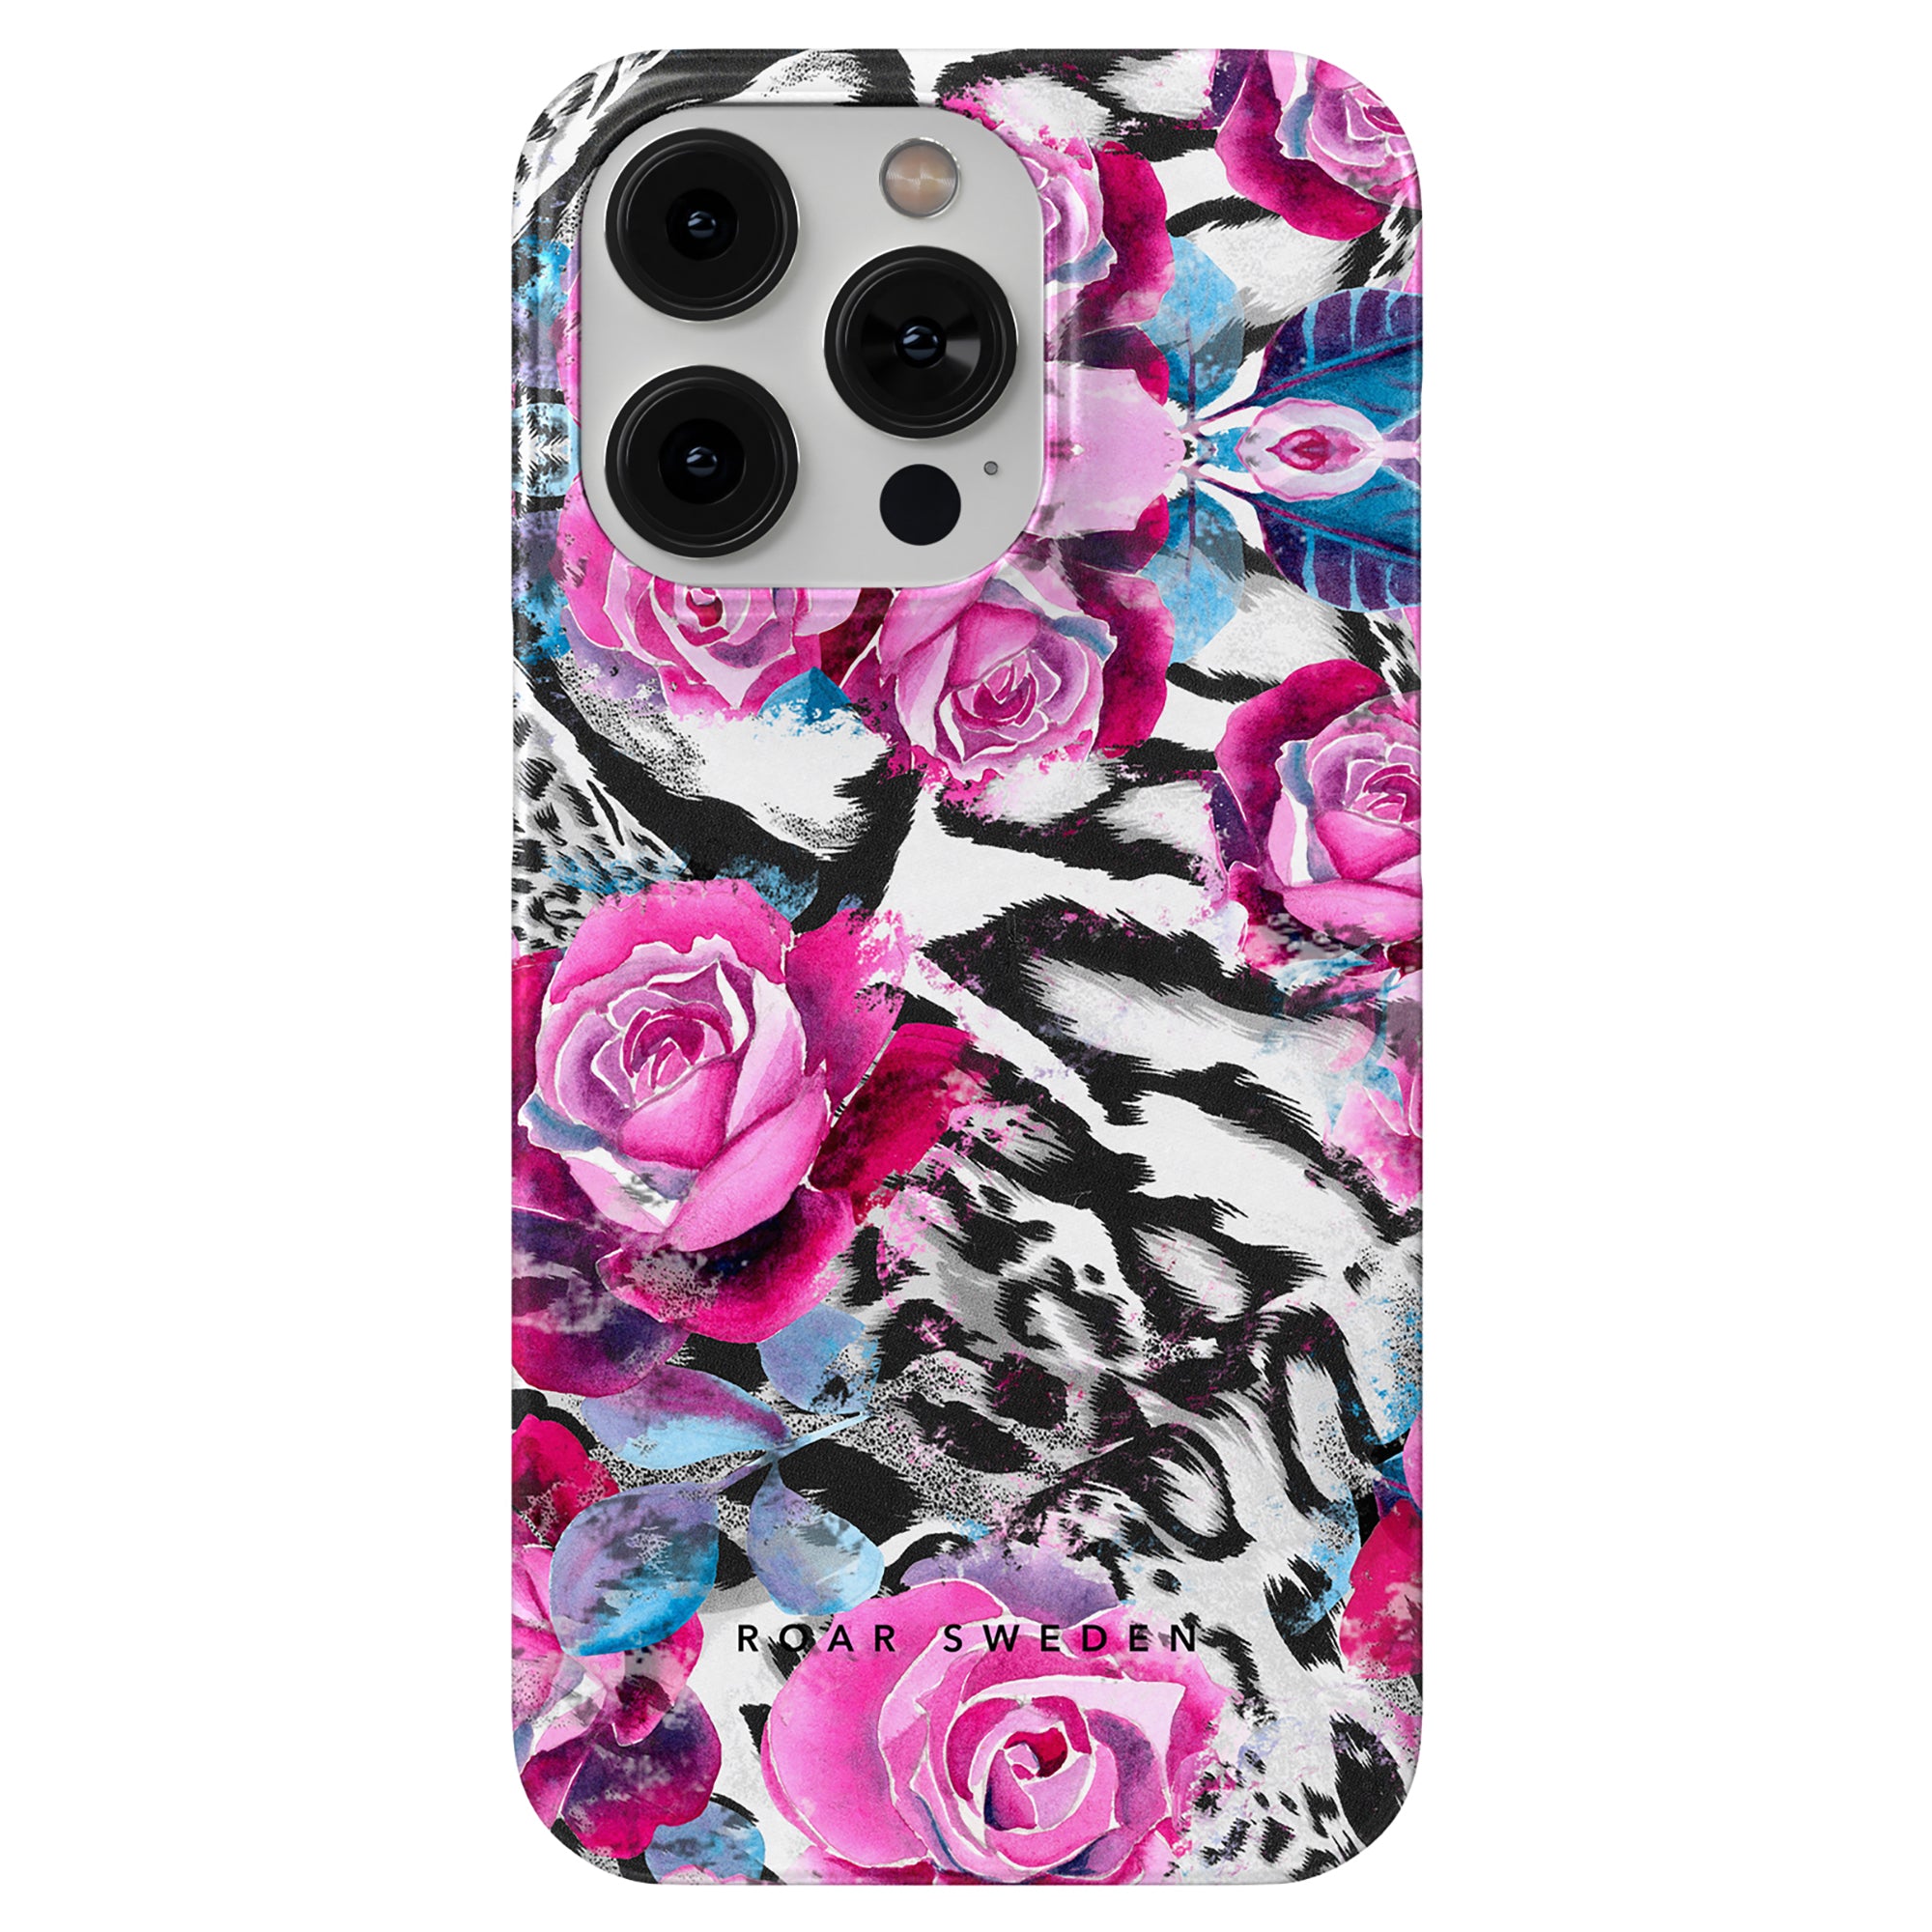 Produktbeskrivning: Förbättra utseendet på din iPhone 11 med Rosy Wildcat - Slim fodral med en fängslande blandning av rosa rosor och zebror. Snyggt och skyddande, detta fodral ger inte bara en touch av